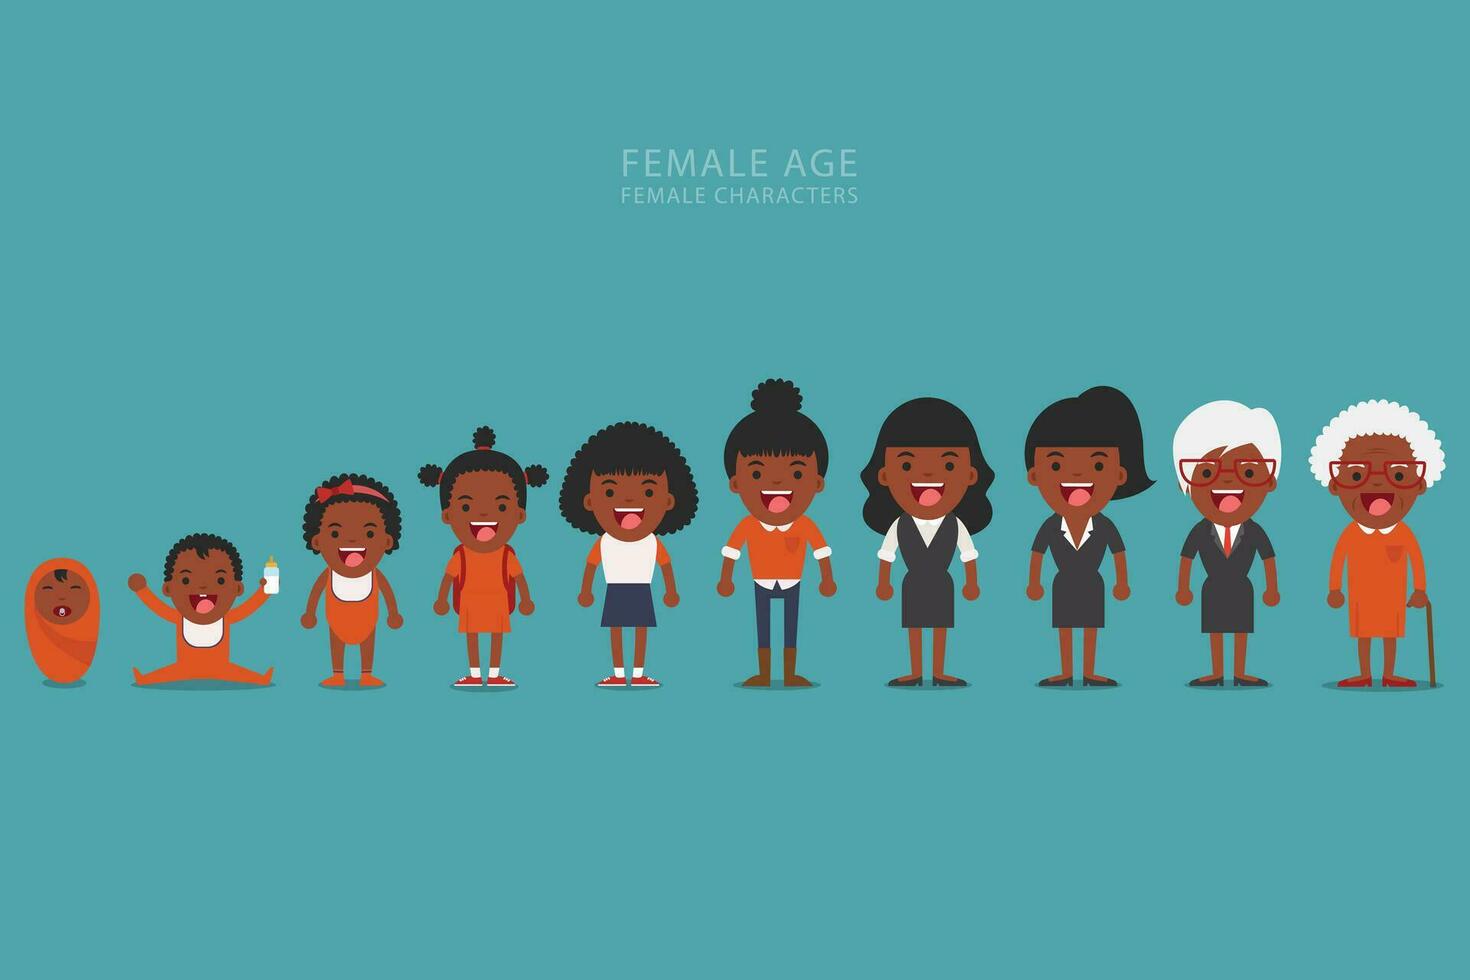 Afrikaanse Amerikaans etnisch mensen generaties Bij verschillend leeftijden. veroudering concept van vrouw karakters, de fiets van leven van kinderjaren naar oud leeftijd vector